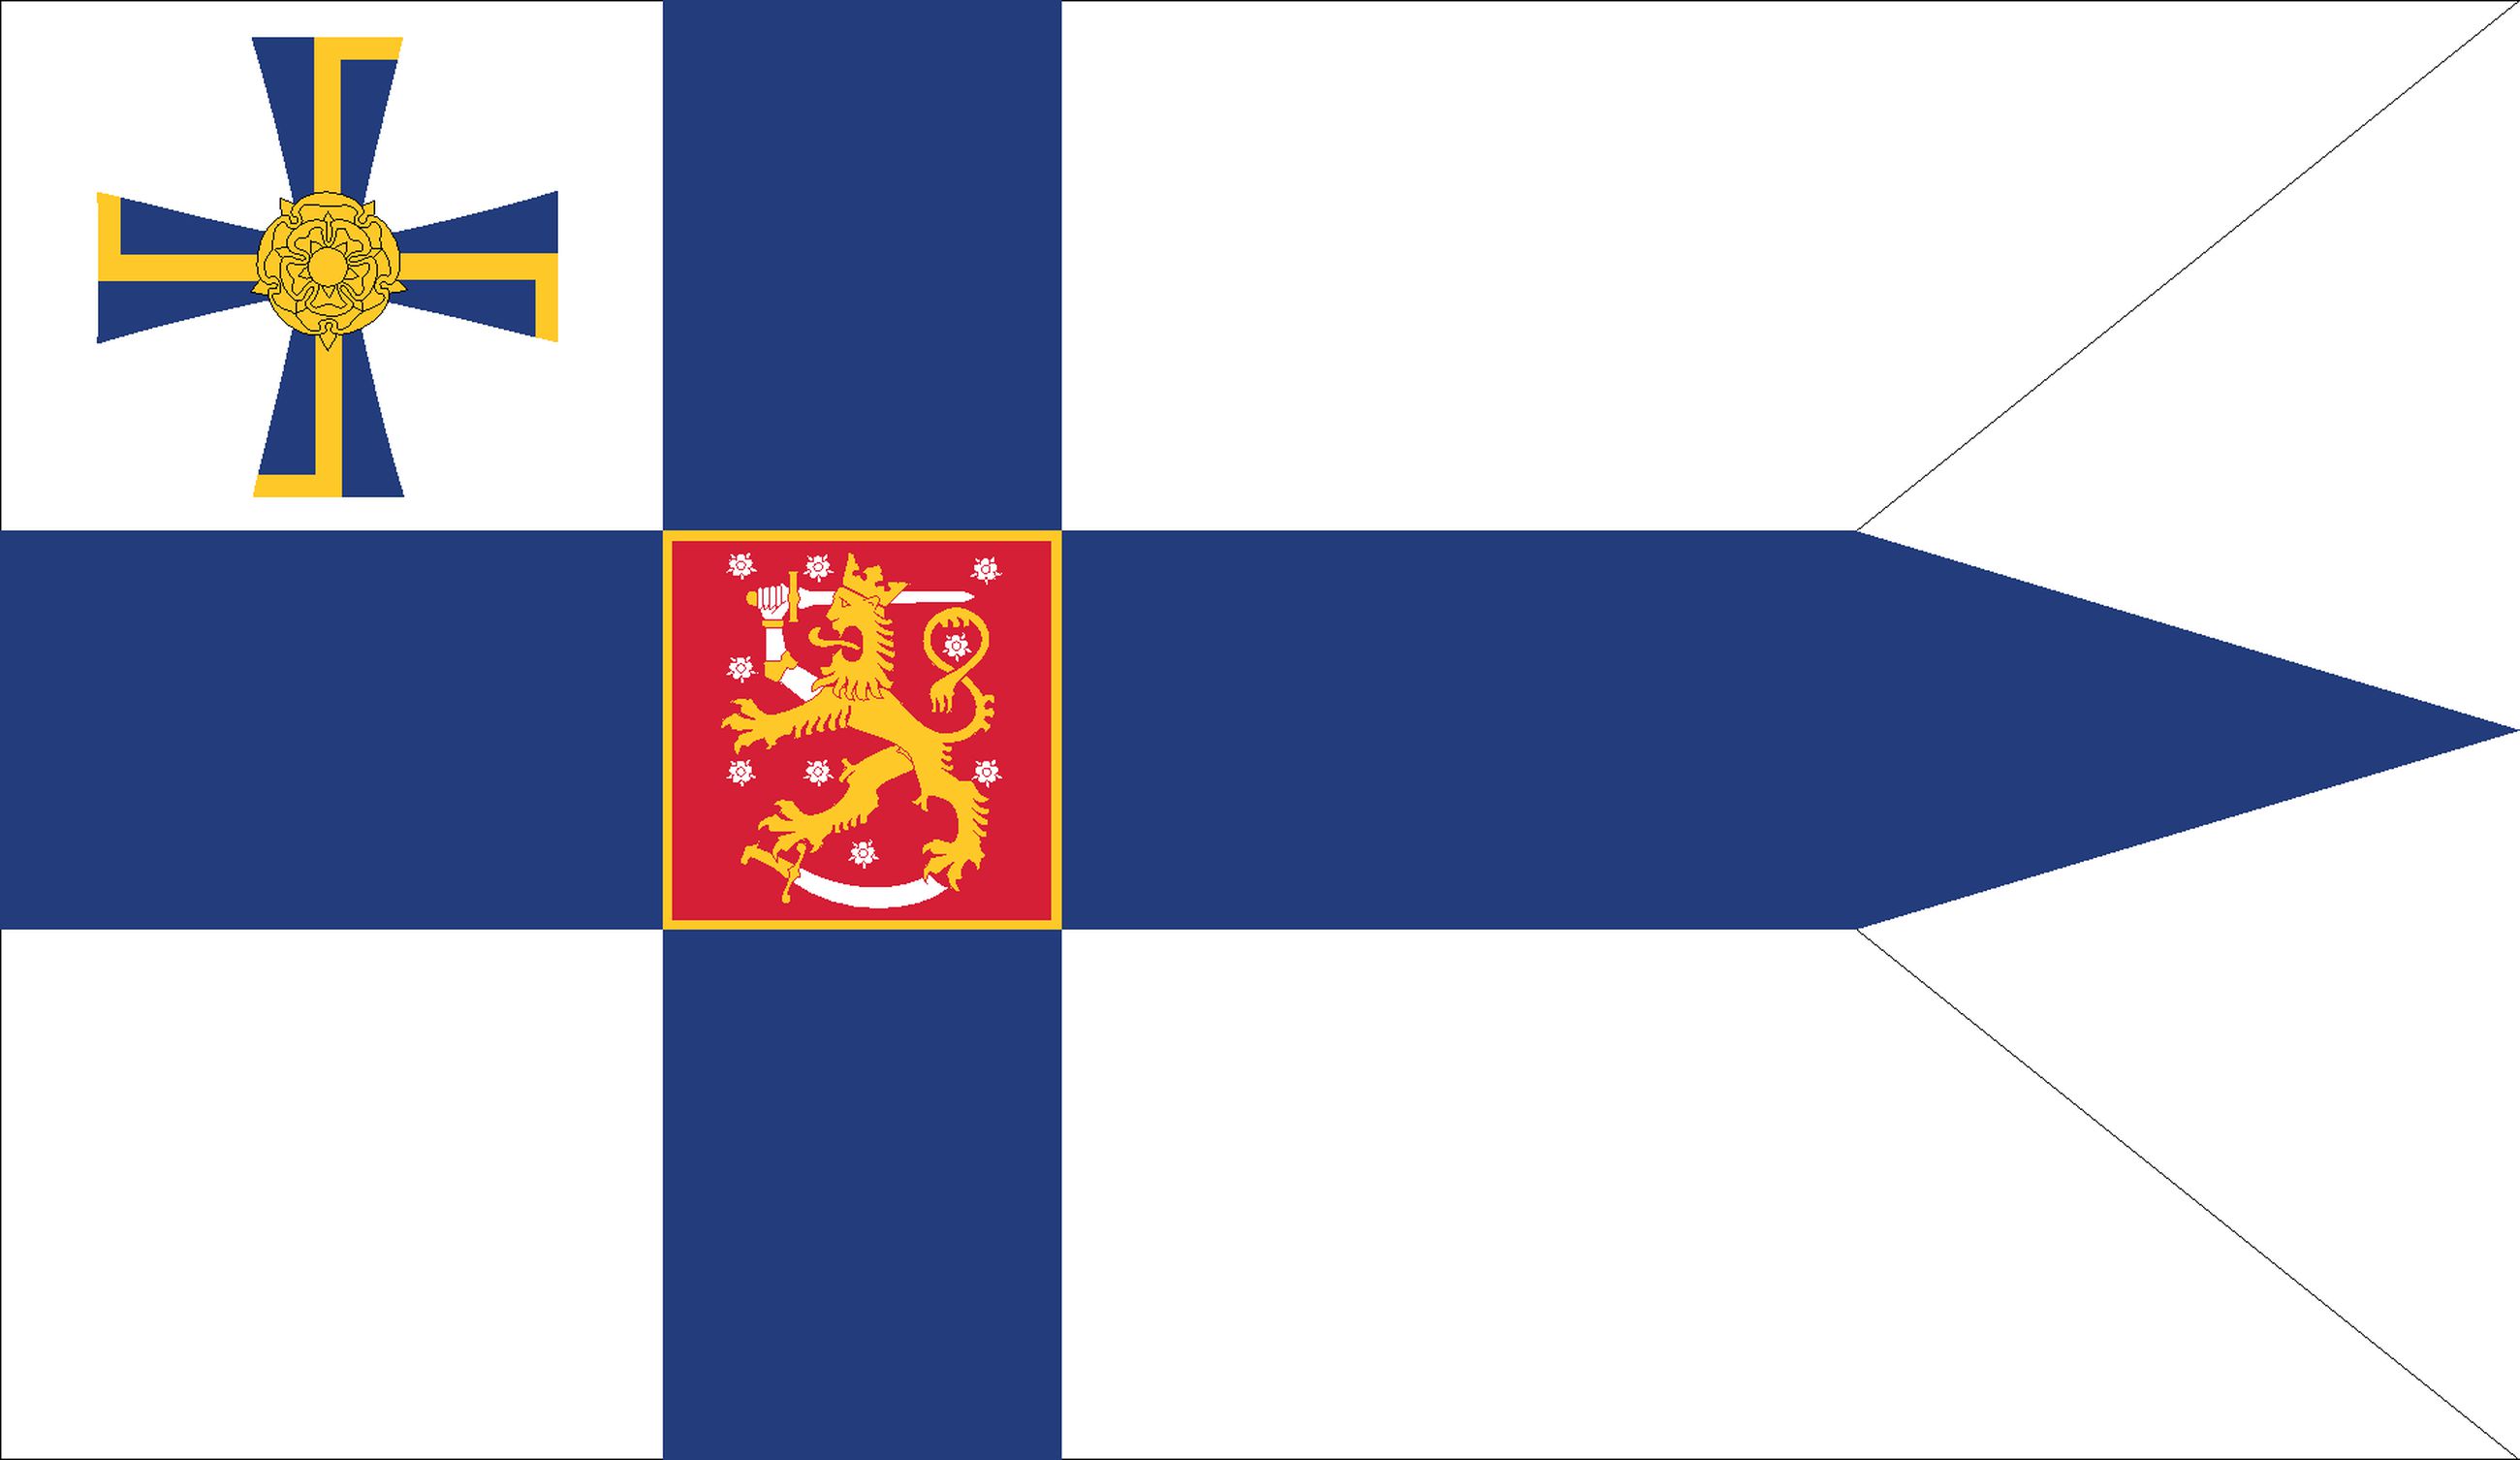 Suomen lippu täyttää maanantaina sata vuotta – suomalaiset ovat jo rohkeita  liputtamaan omissa juhlissa ja omaksi iloksi | Kaleva